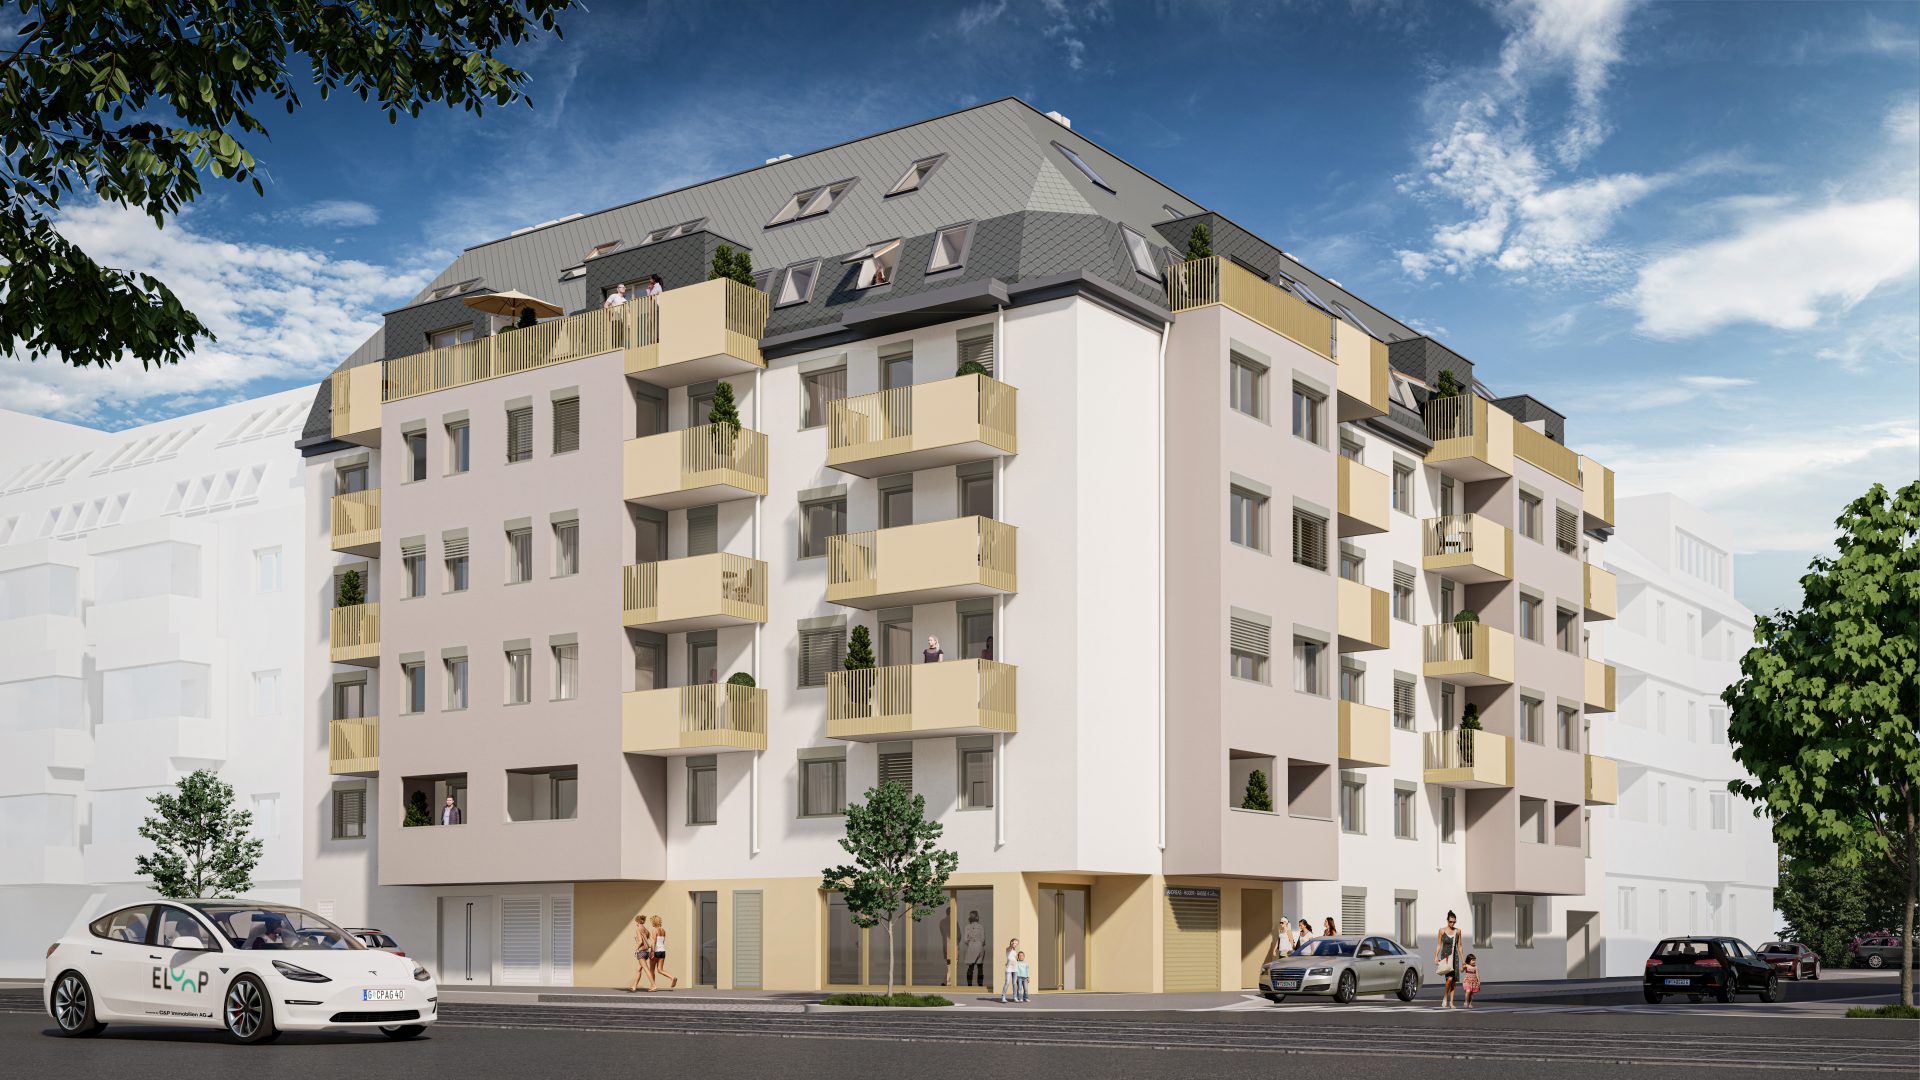 Wagramer Straße 113 - Anlegerwohnung in Wien - C&P Immobilien AG